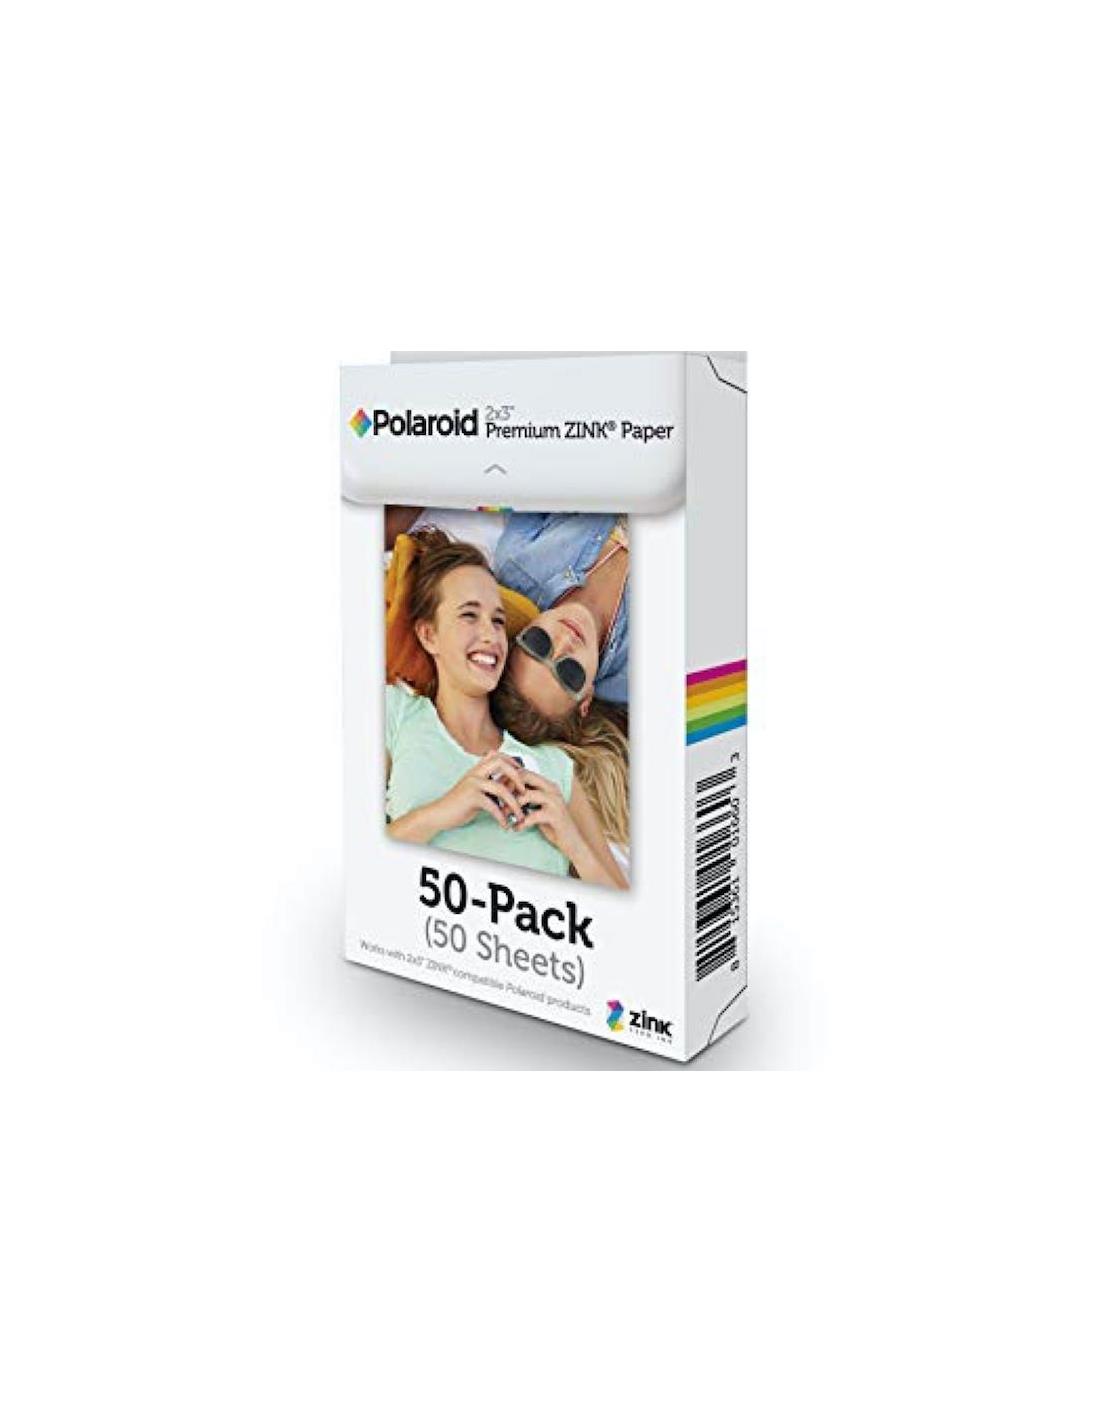 Polaroid 50-Pack Papel Zink Premium